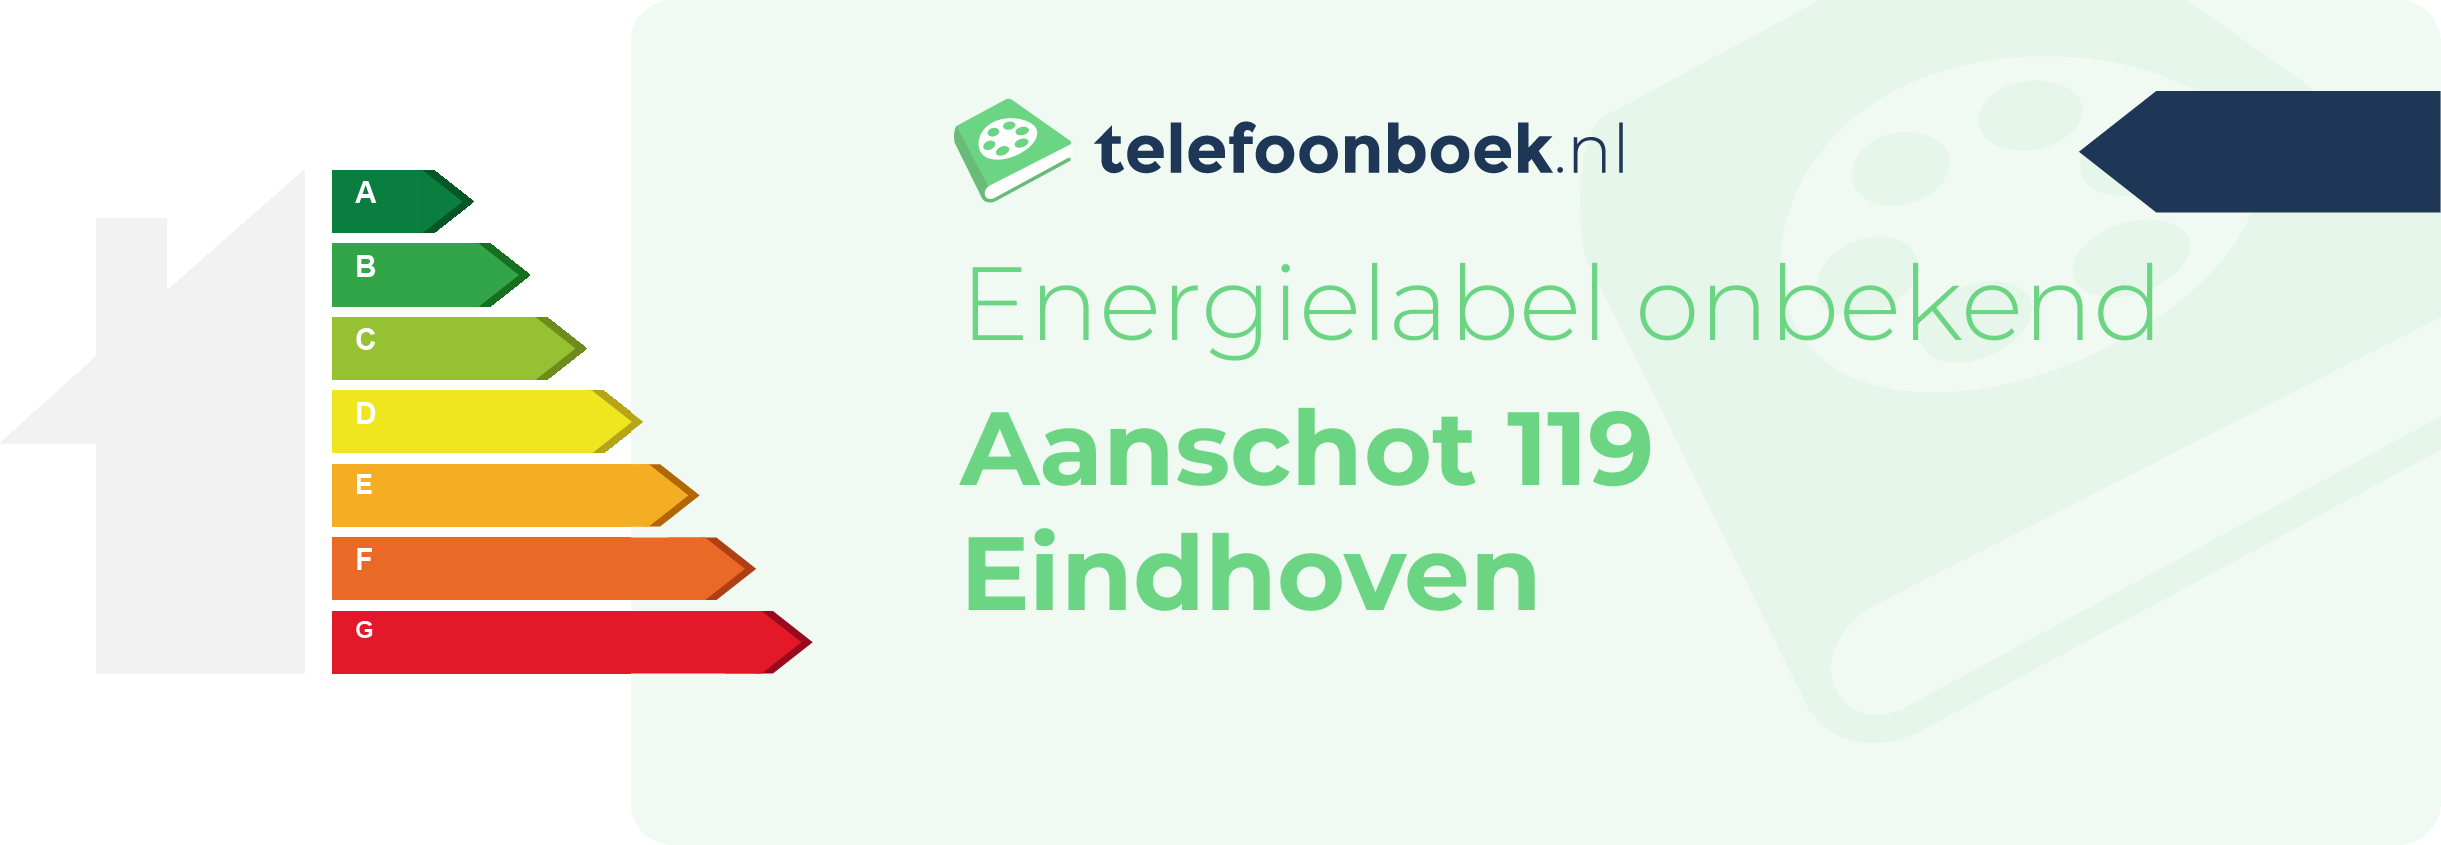 Energielabel Aanschot 119 Eindhoven